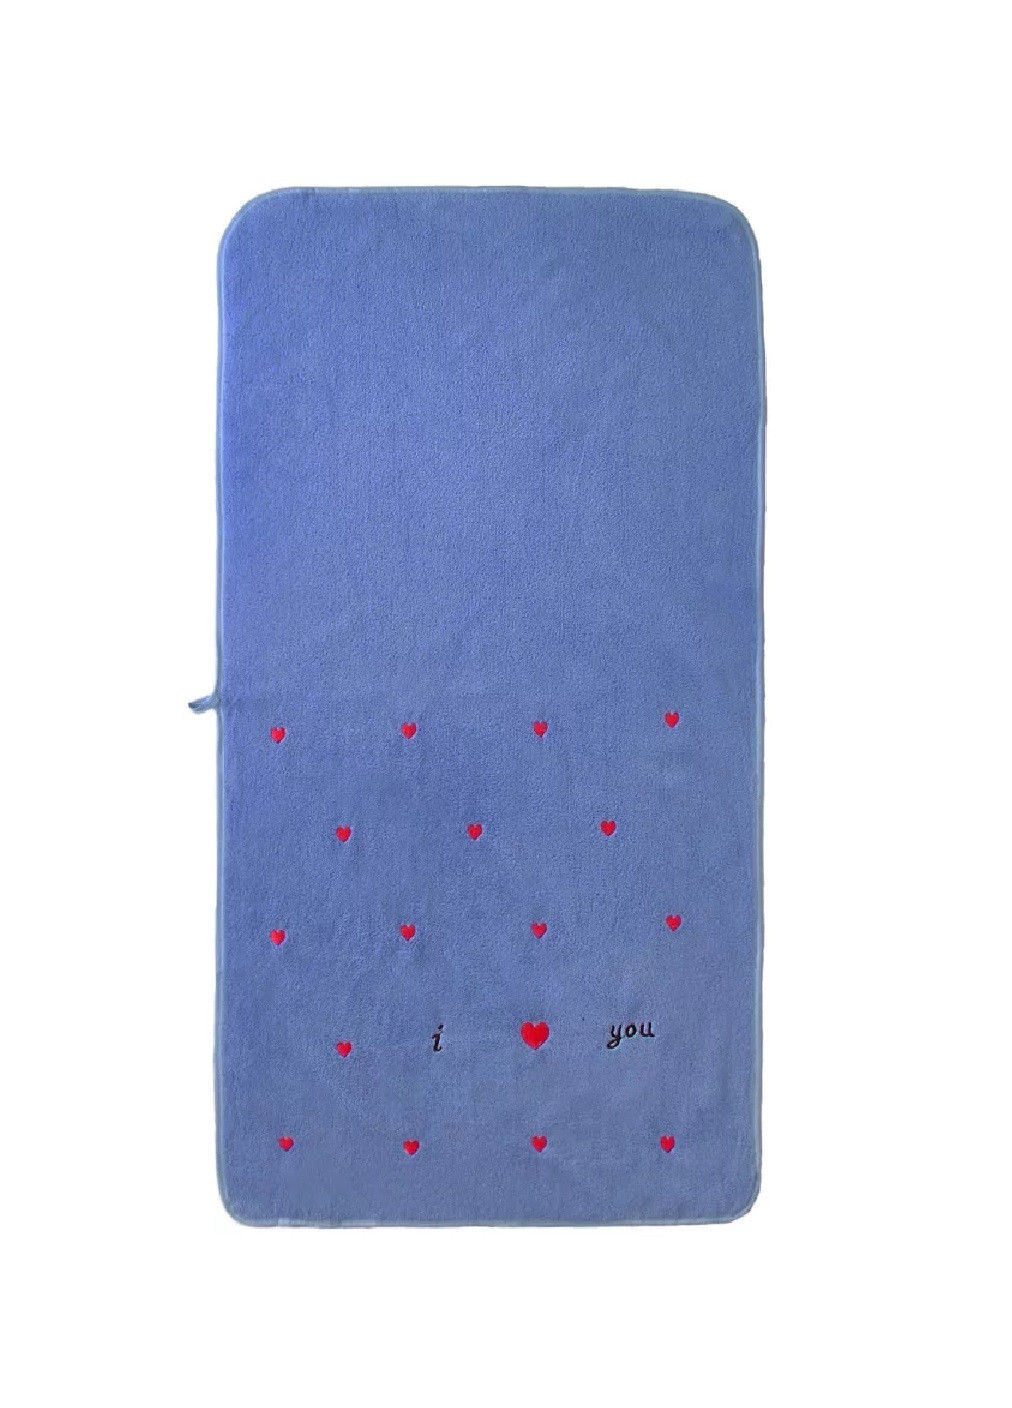 Unbranded полотенце микрофибра велюр для лица быстросохнущее влагопоглощающее с узором 100х50 см (476133-prob) сердце синий сердечки синий производство -